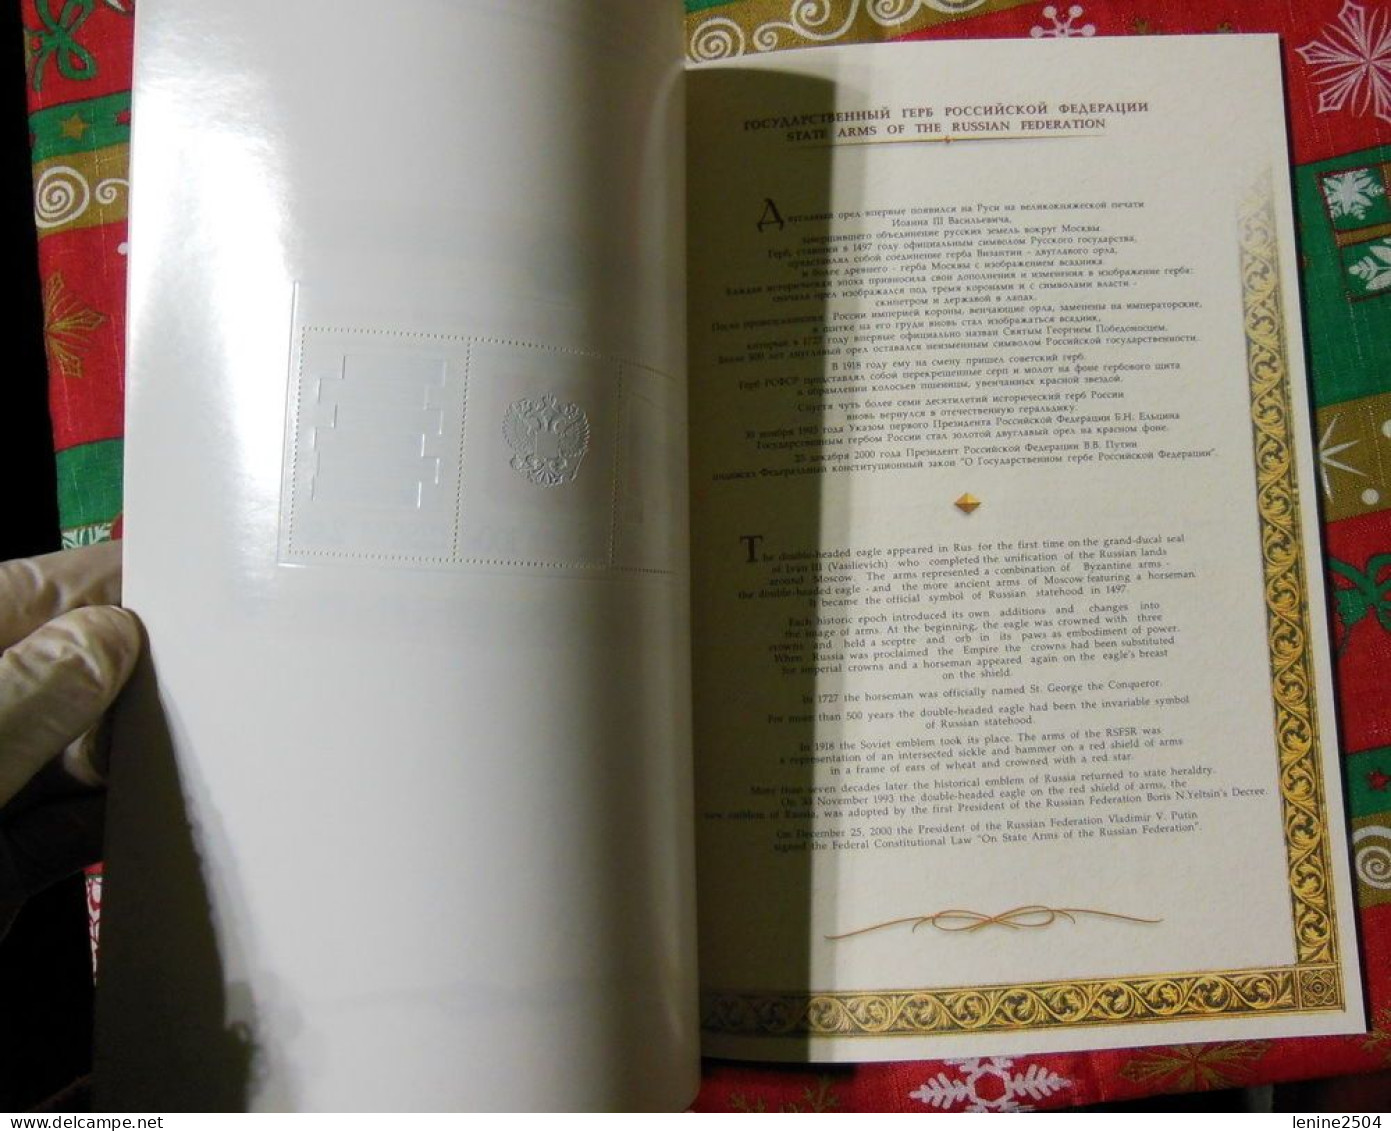 Russie 2001 N° 6570-6573 ** Emblème Fédération Carnet Prestige Folder Booklet Rouge Format A4 Forte Valeur - Unused Stamps